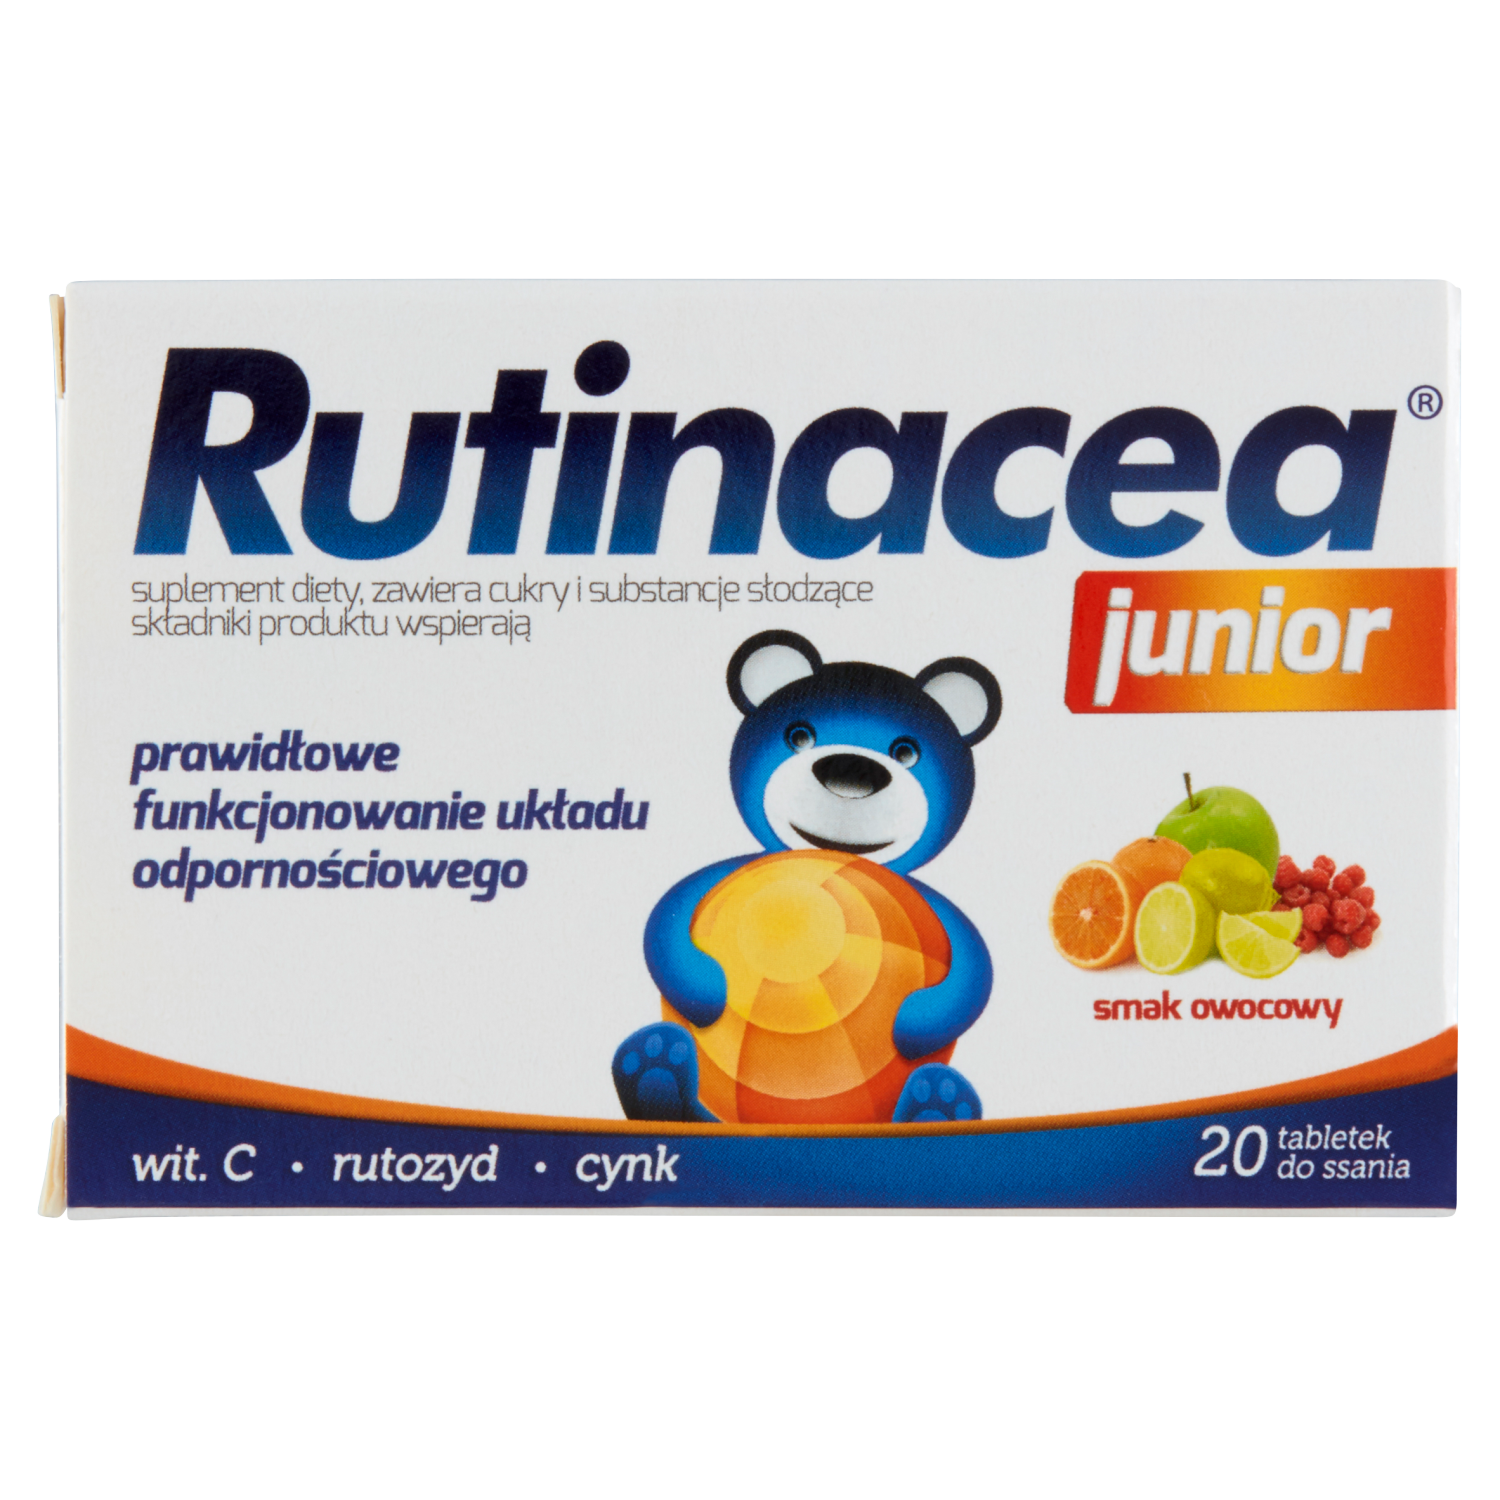 Rutinacea Junior биологически активная добавка, 20 таблеток/1 упаковка